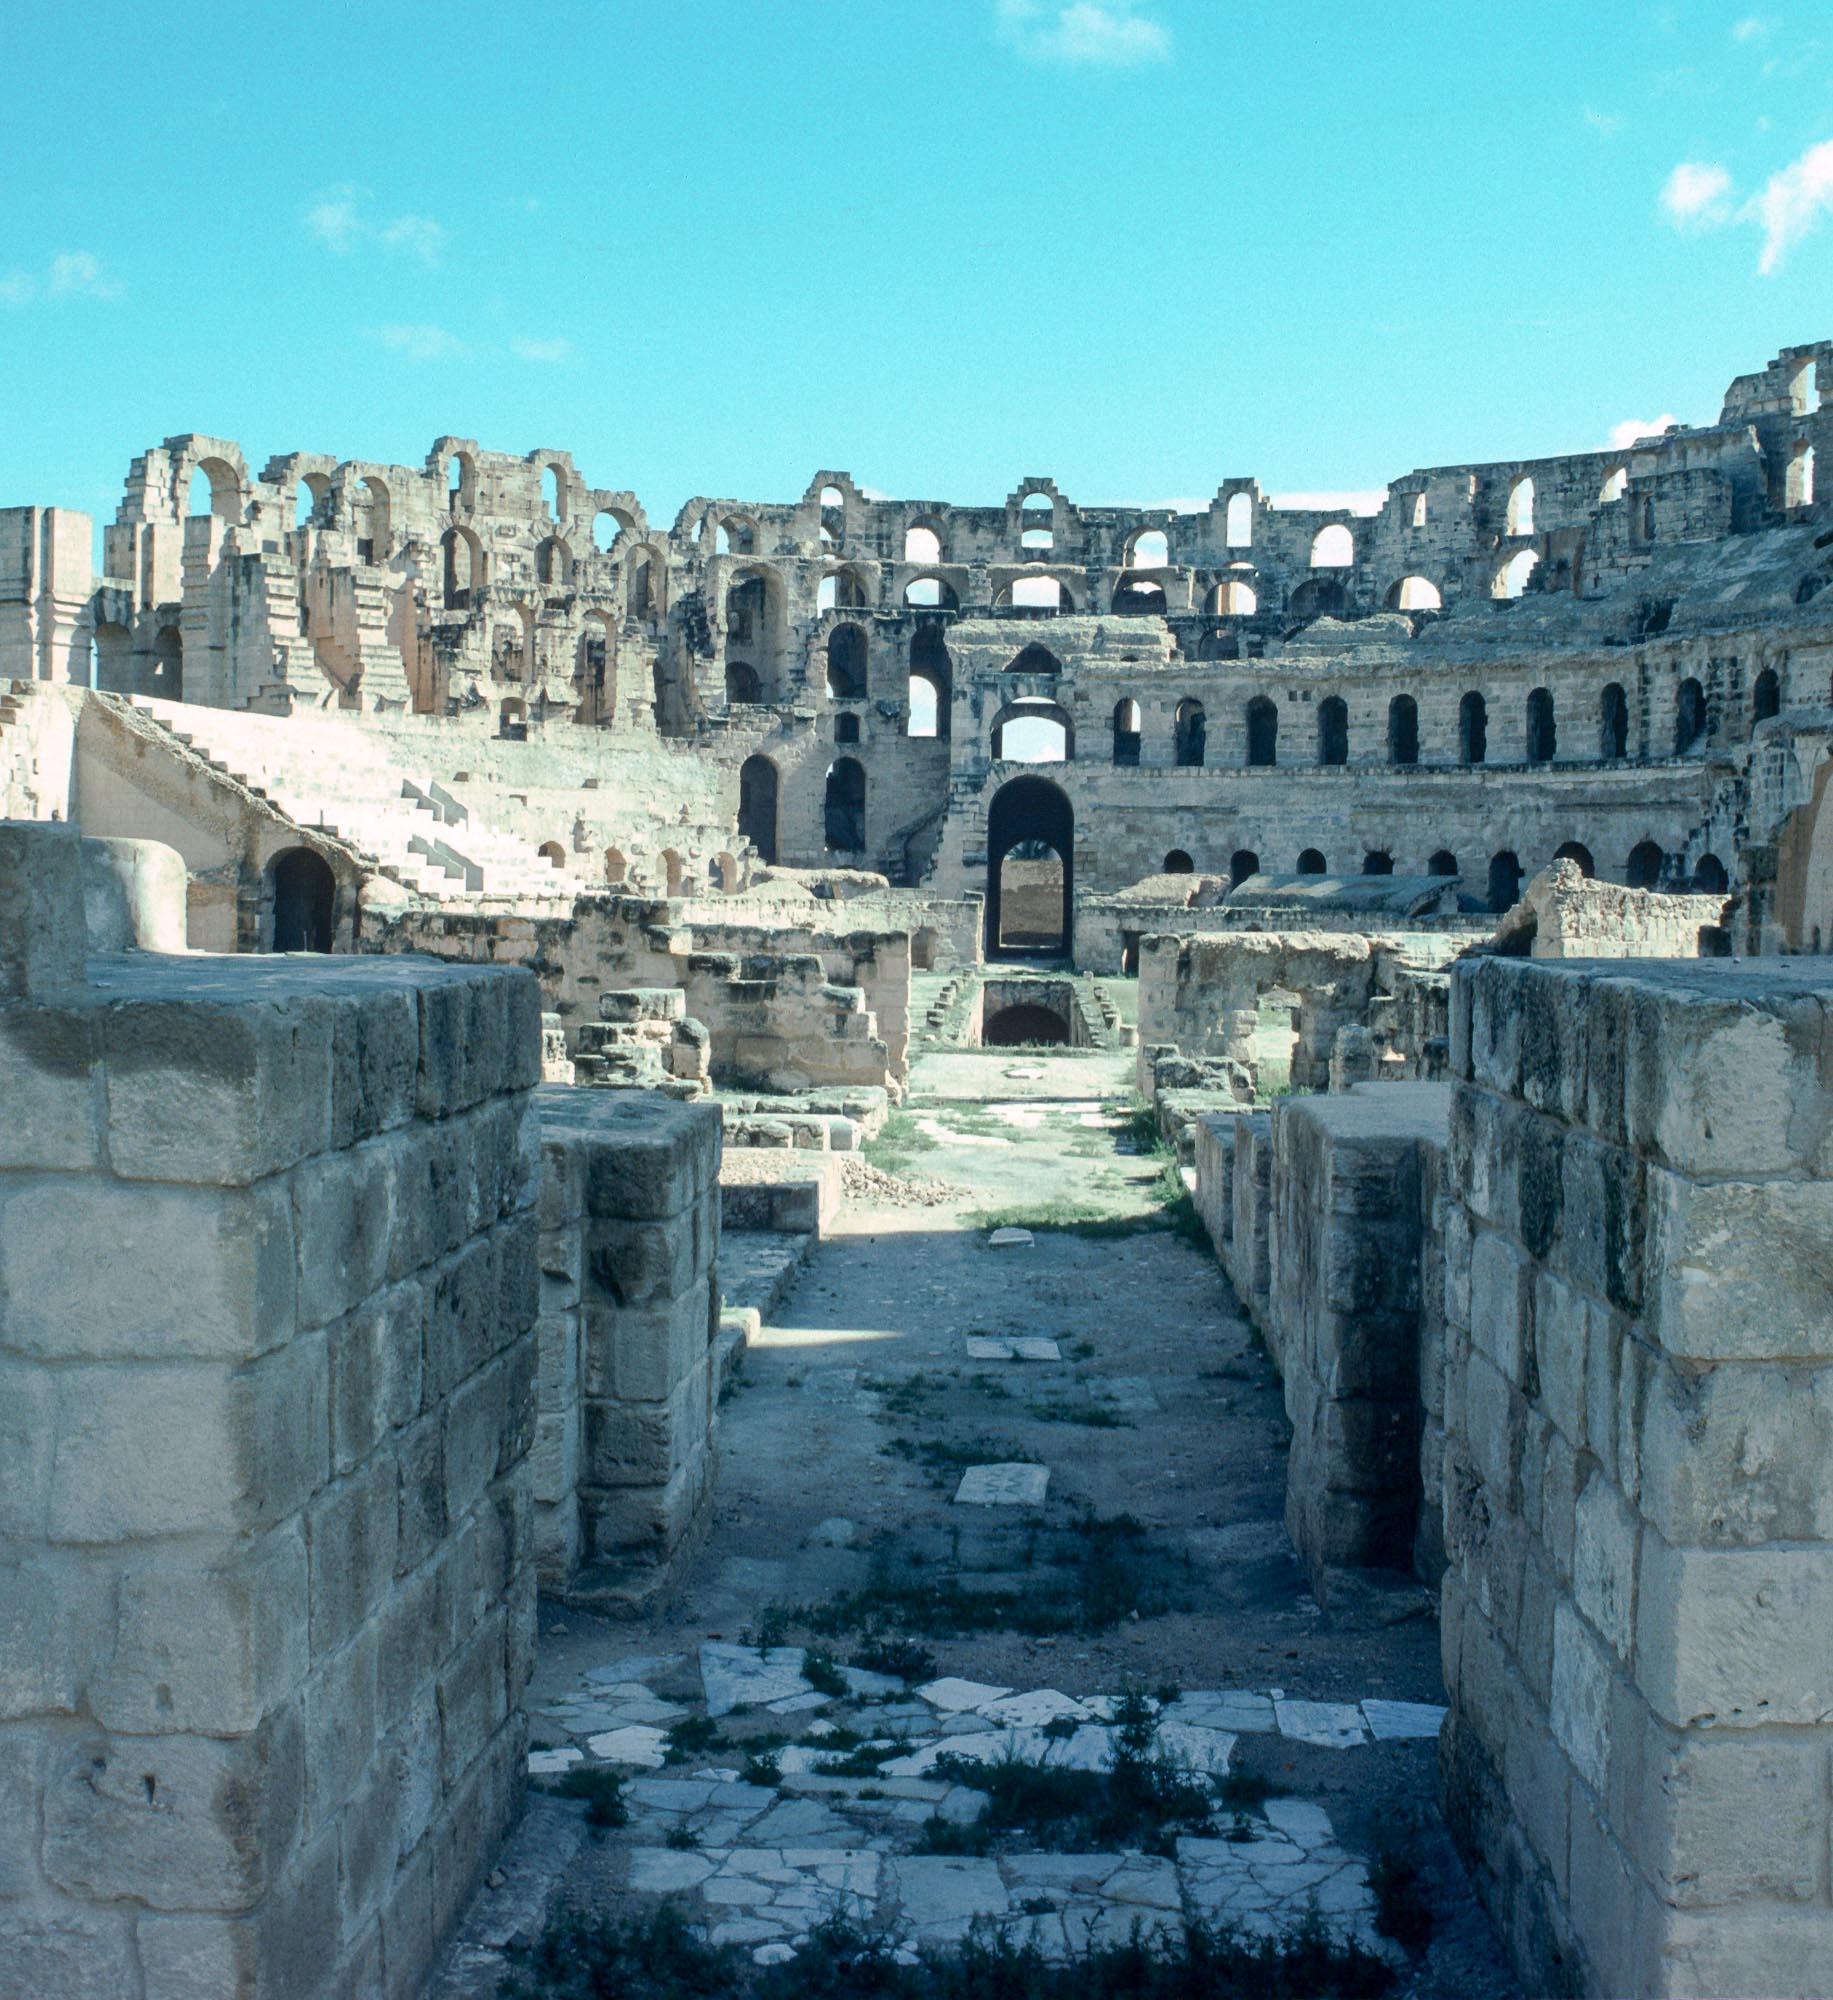 Inside Amphitheatre of El Jem 500k